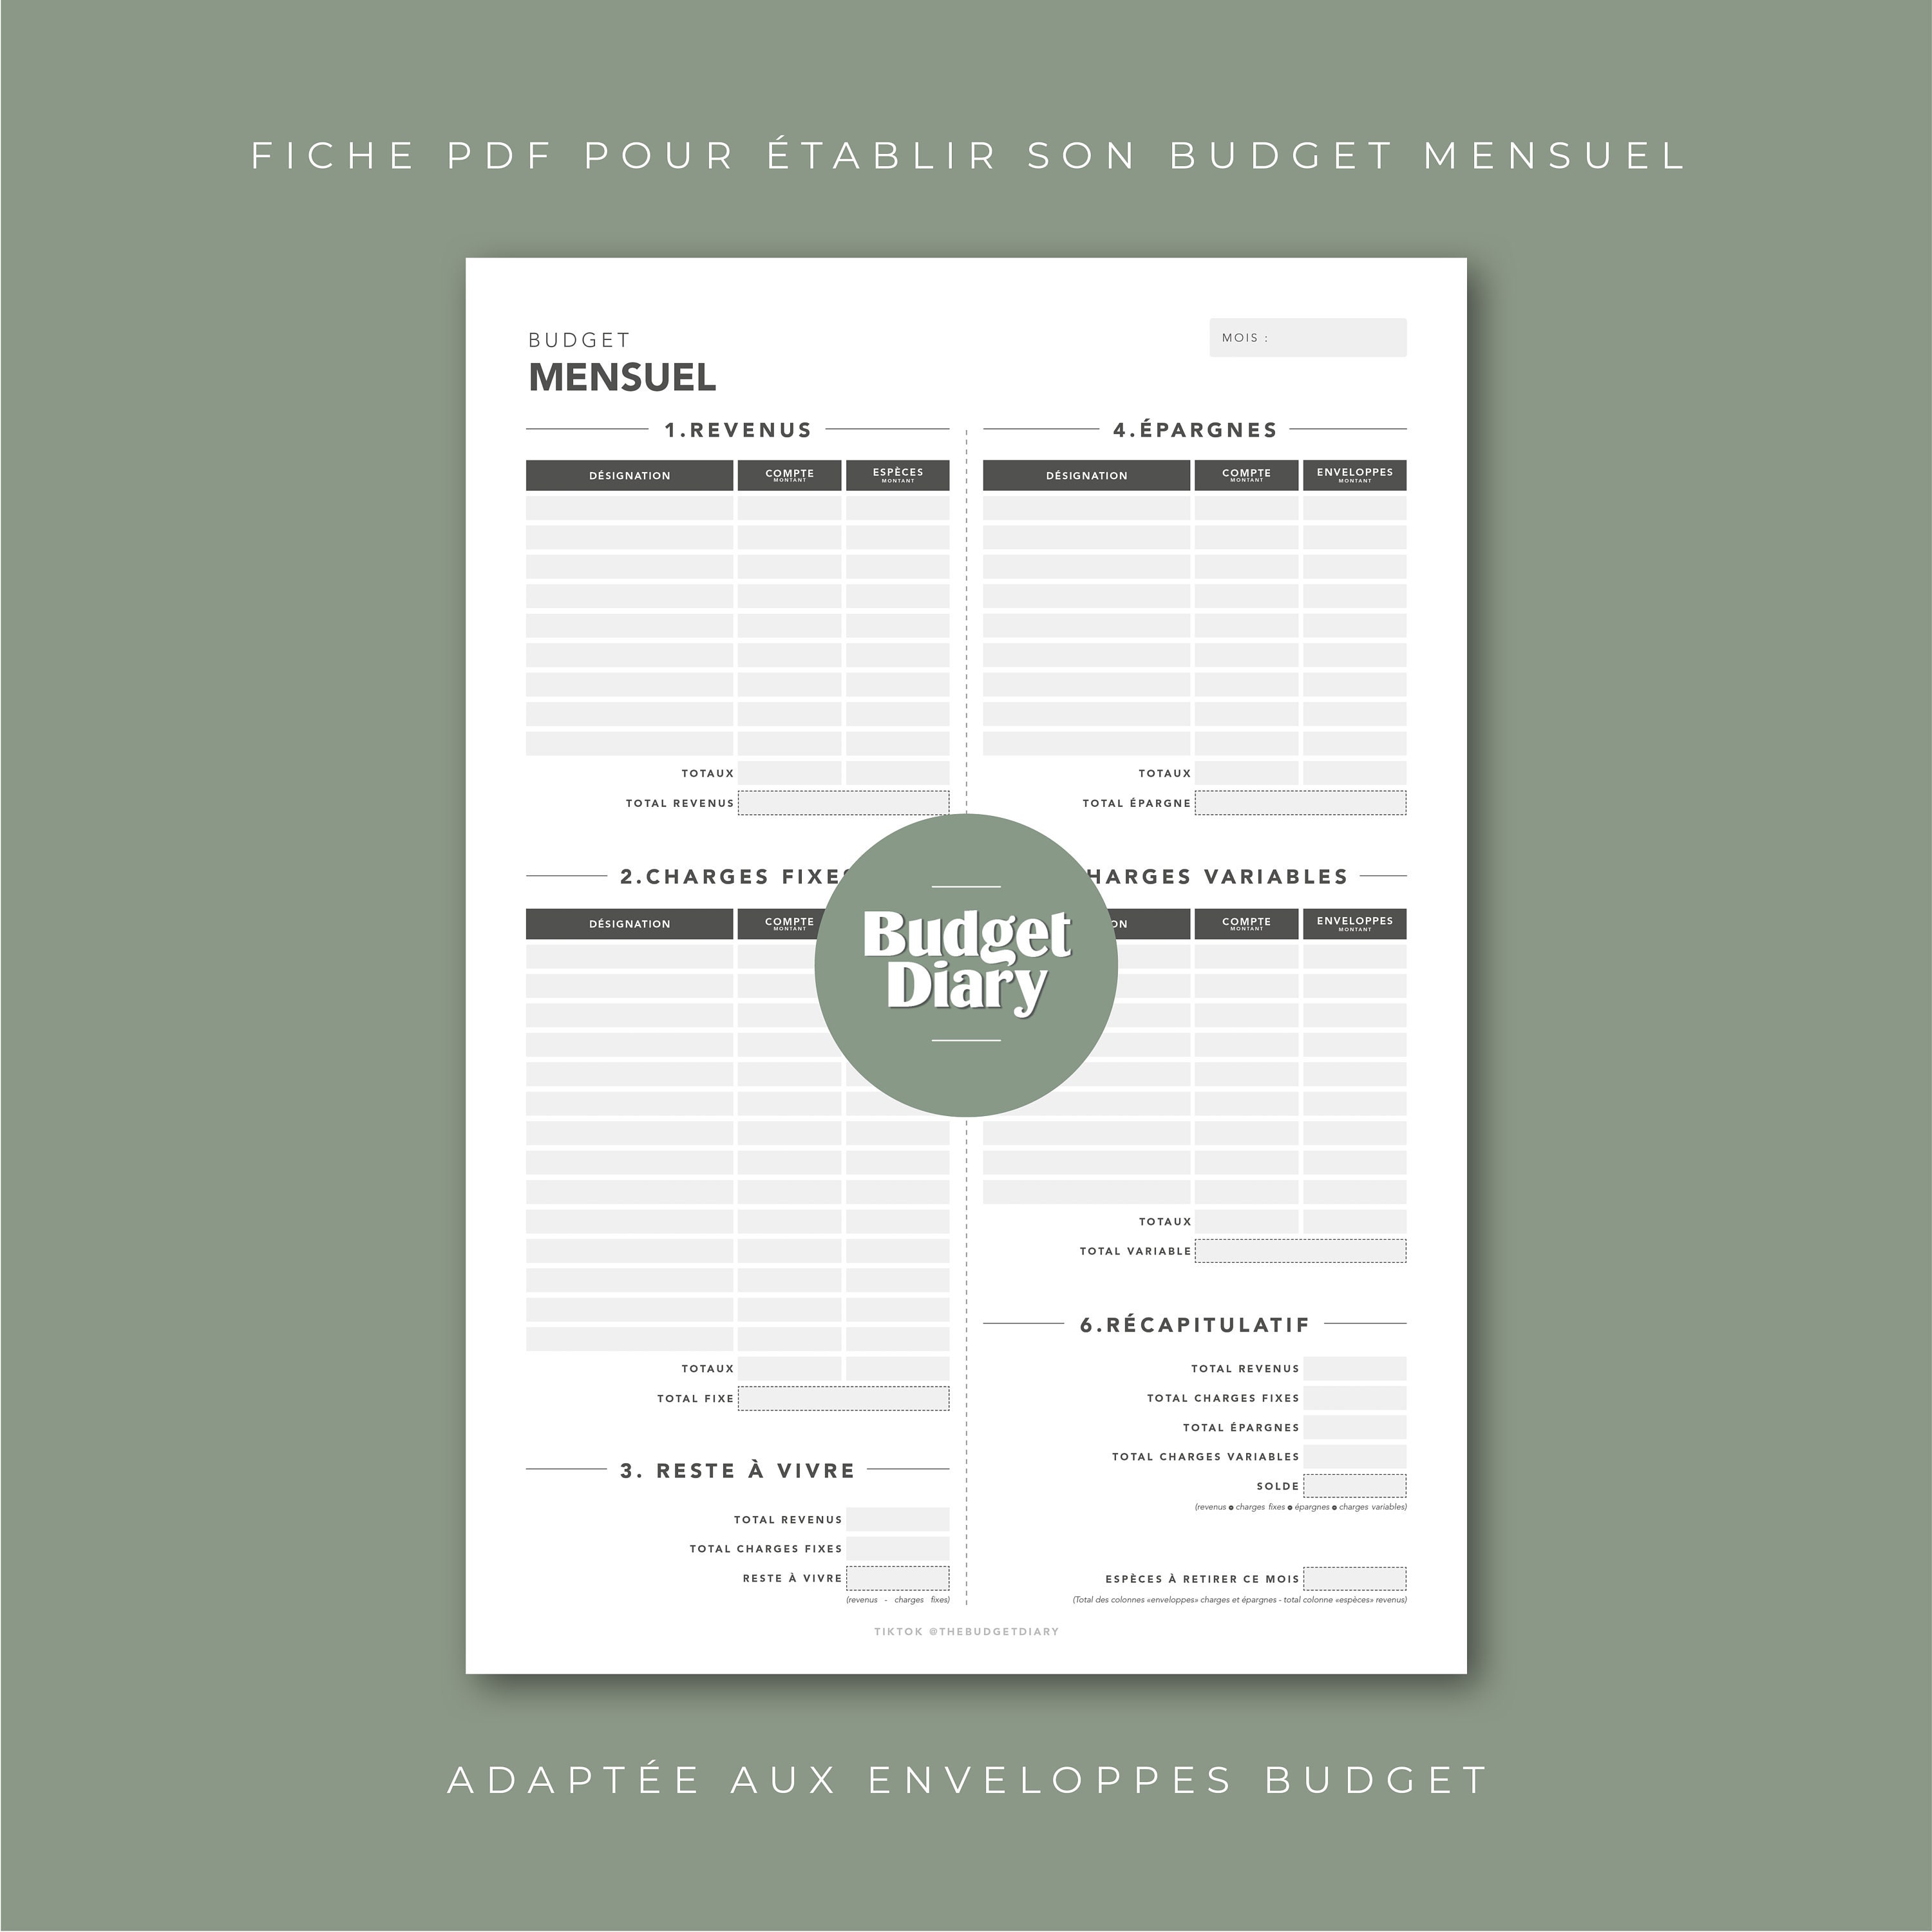 Budget mensuel francais imprimable - compatible systeme des enveloppes -  fichier pdf a4 - téléchargement instantané - thème nature - Un grand marché